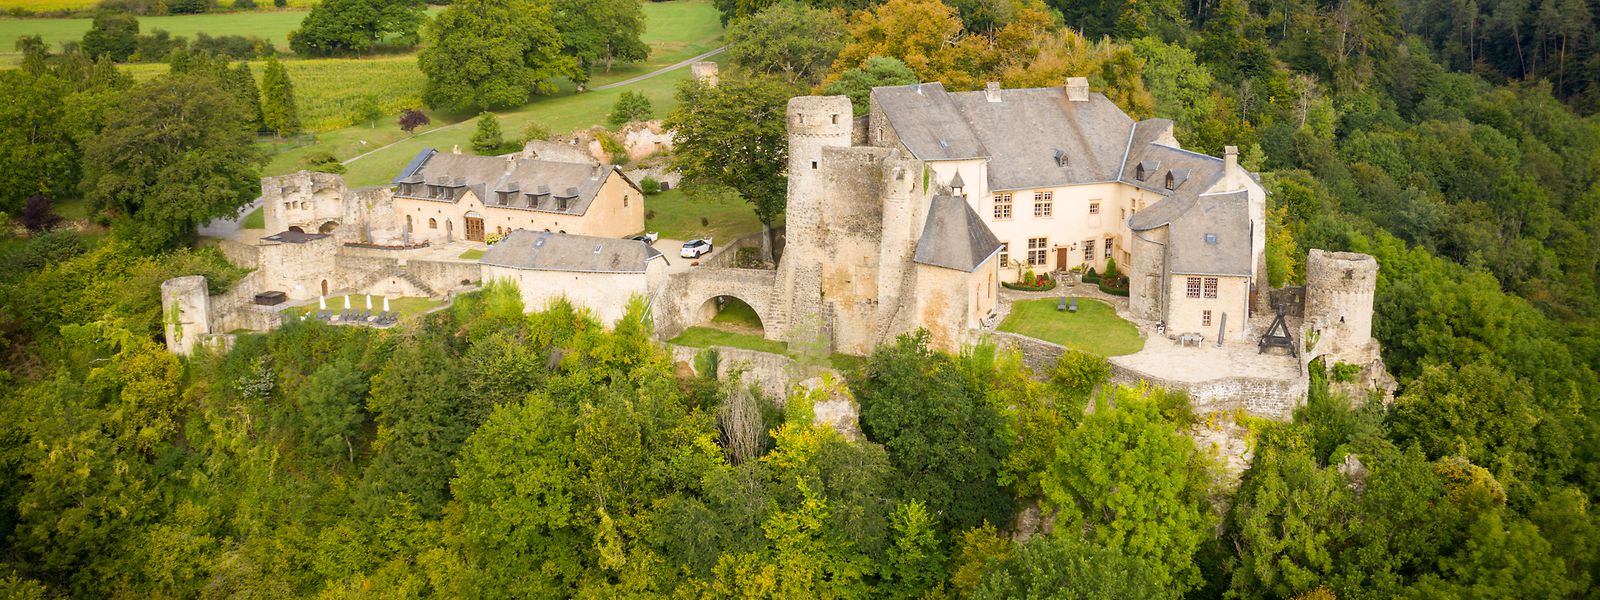 Viele Schlösser und Burgen in Luxemburg - hier das mittelalterliche Schloss Ansemburg - sind in Privatbesitz. 